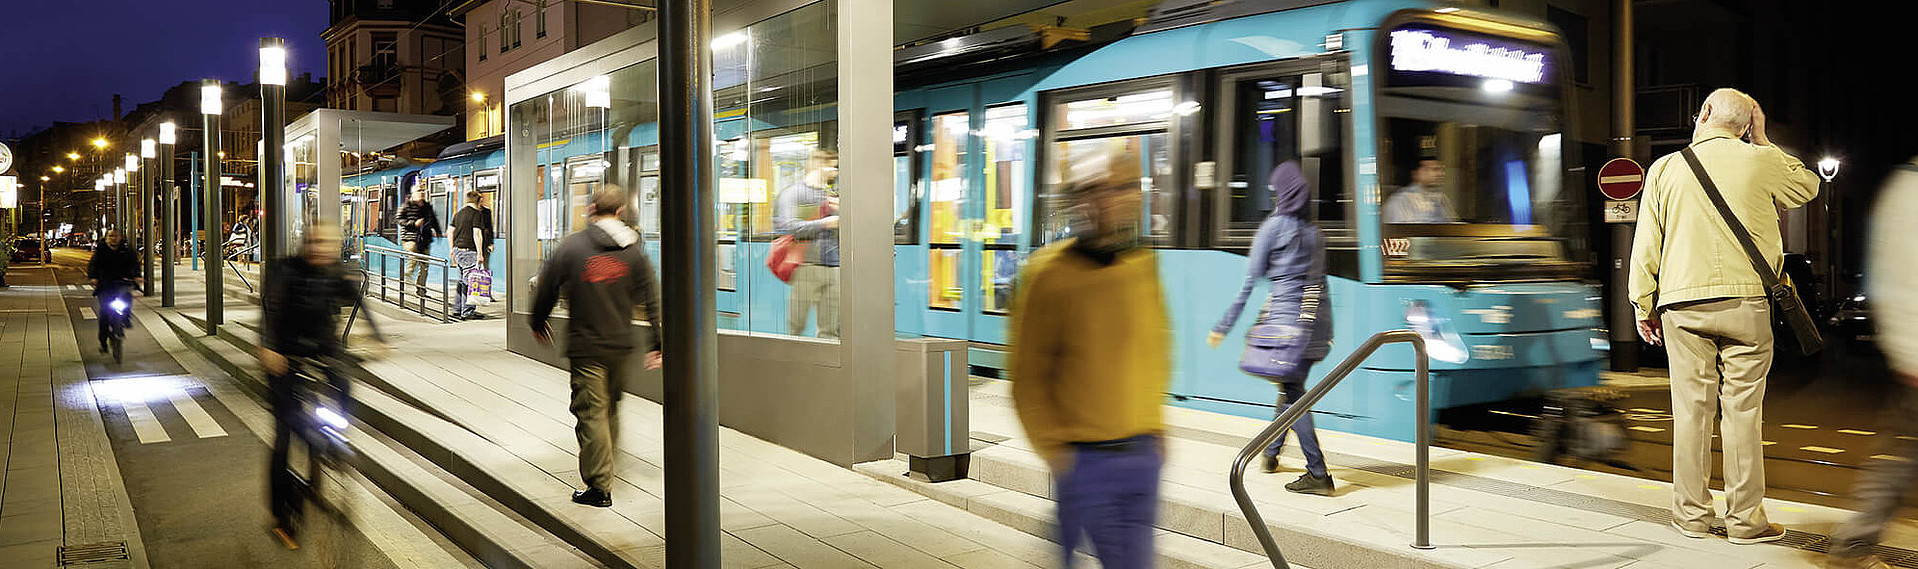 VGF-U-Bahn bei Nacht umgeben von Menschen, die auf die Bahn warten